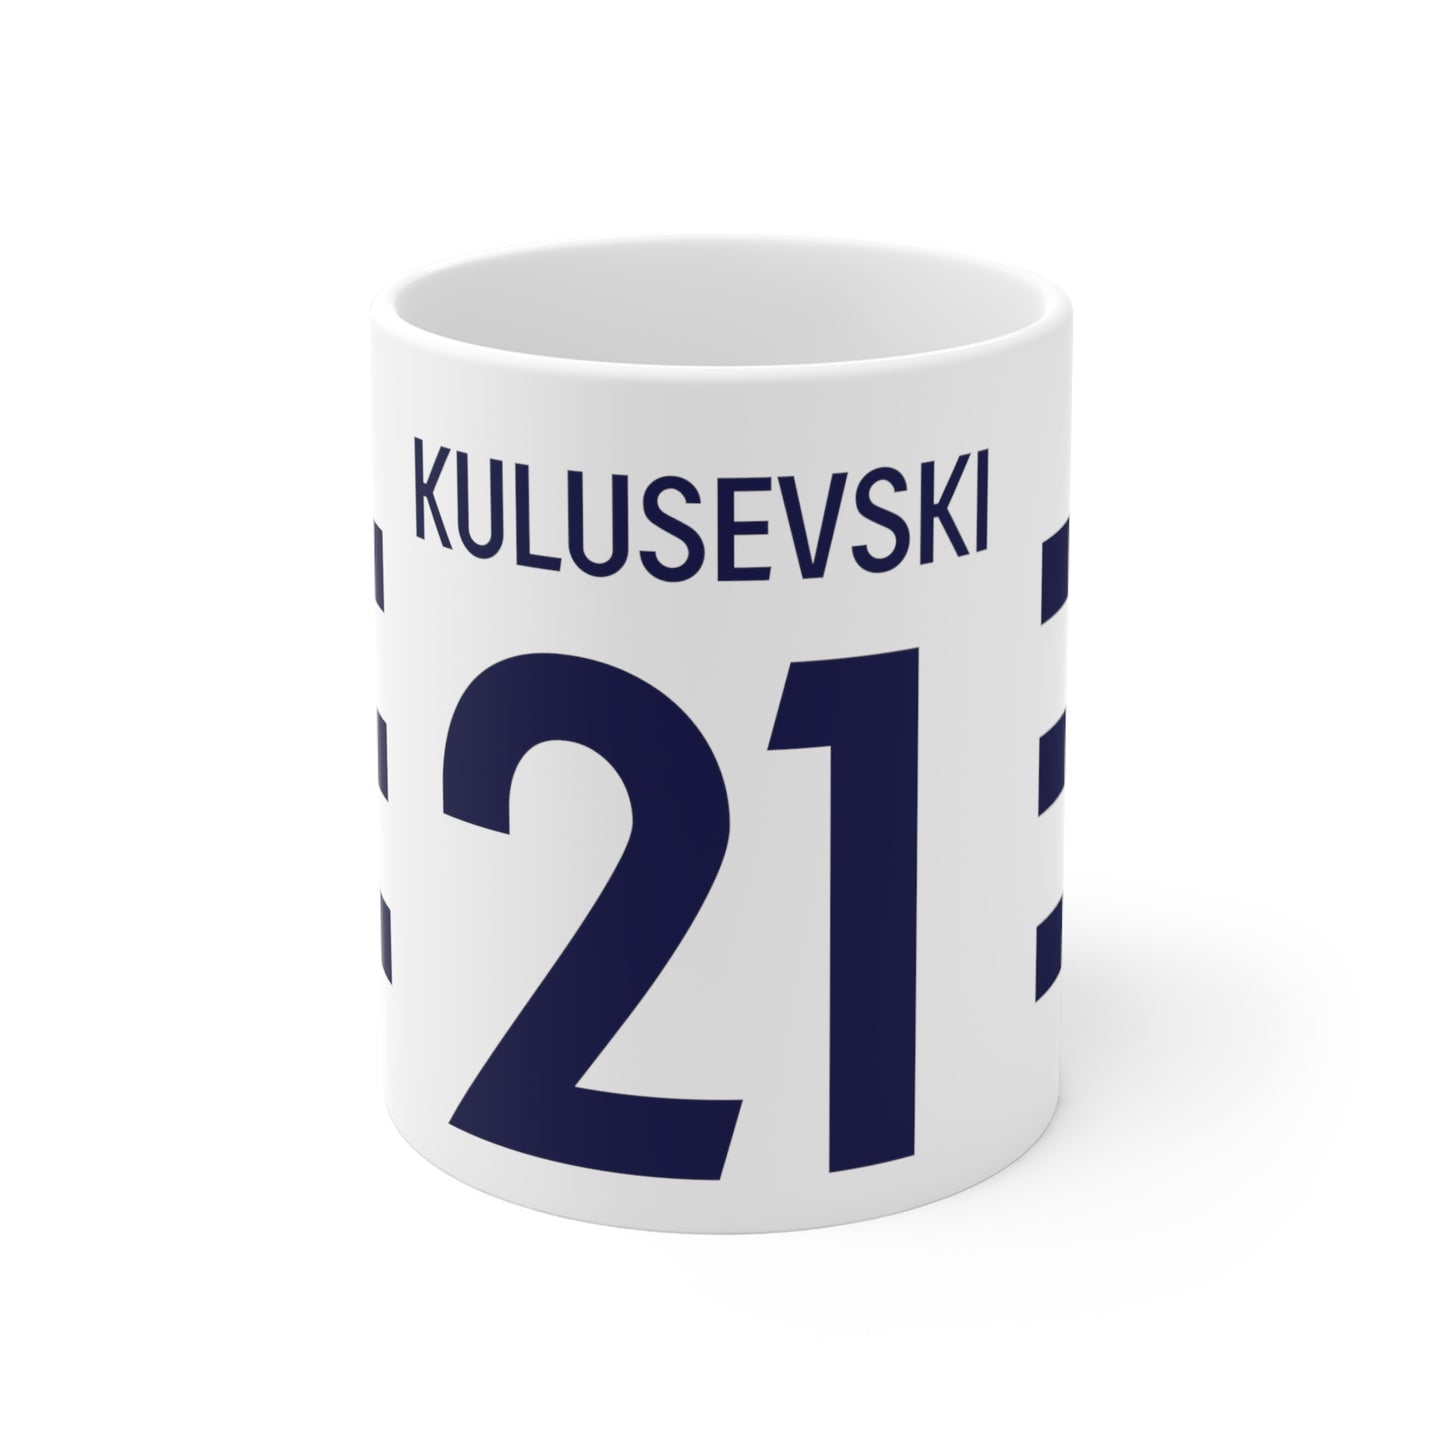 Kulusevski 21